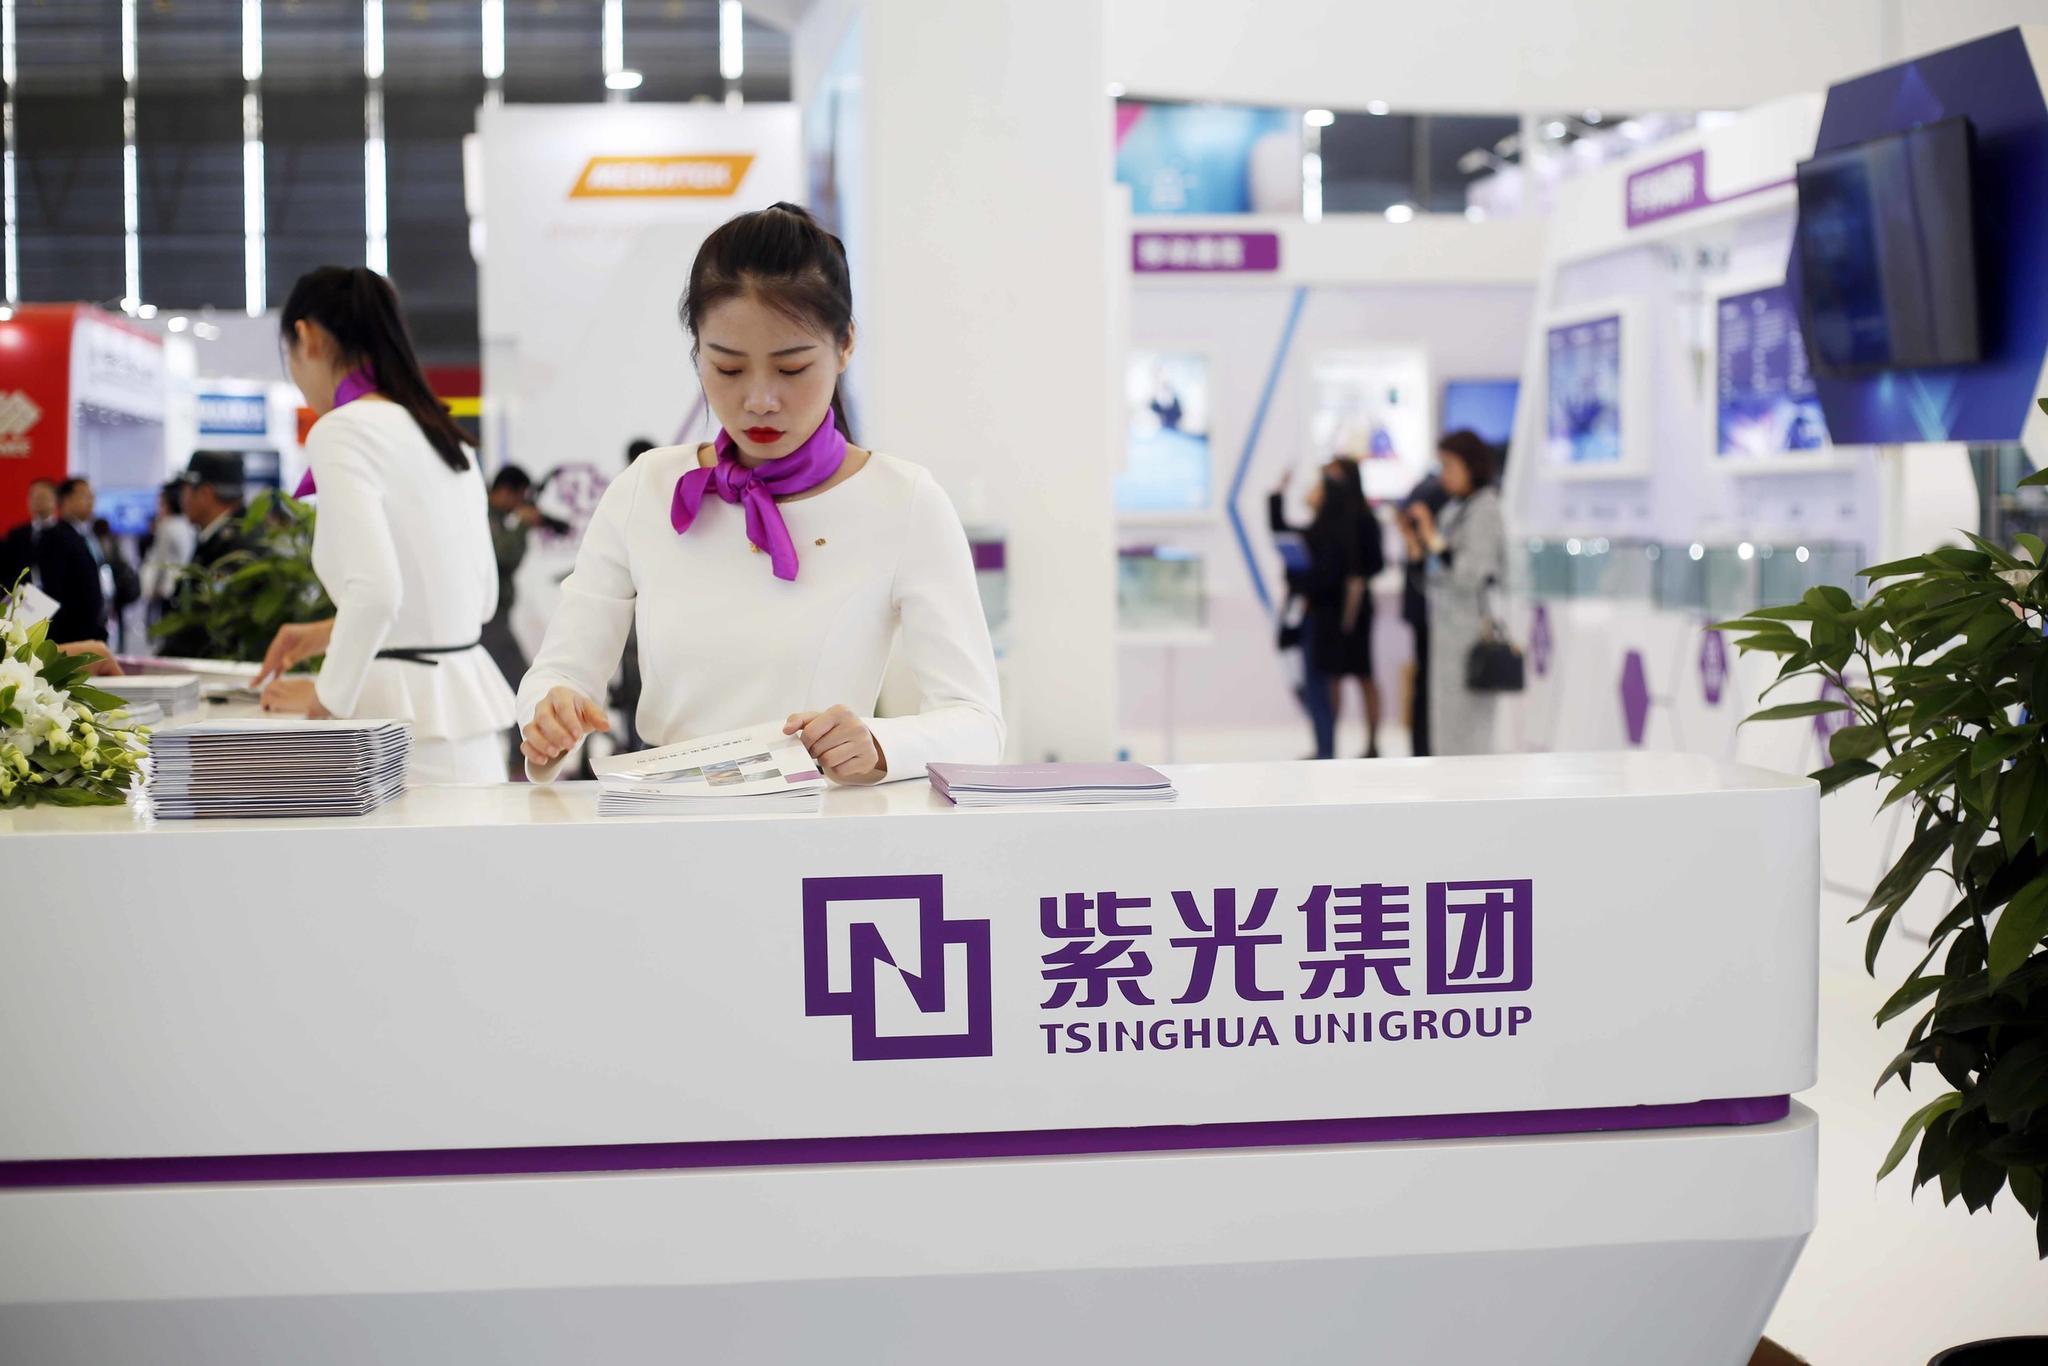 紫光展銳超華為海思，成中國第三大晶片供應商，沒想到發展這麼快